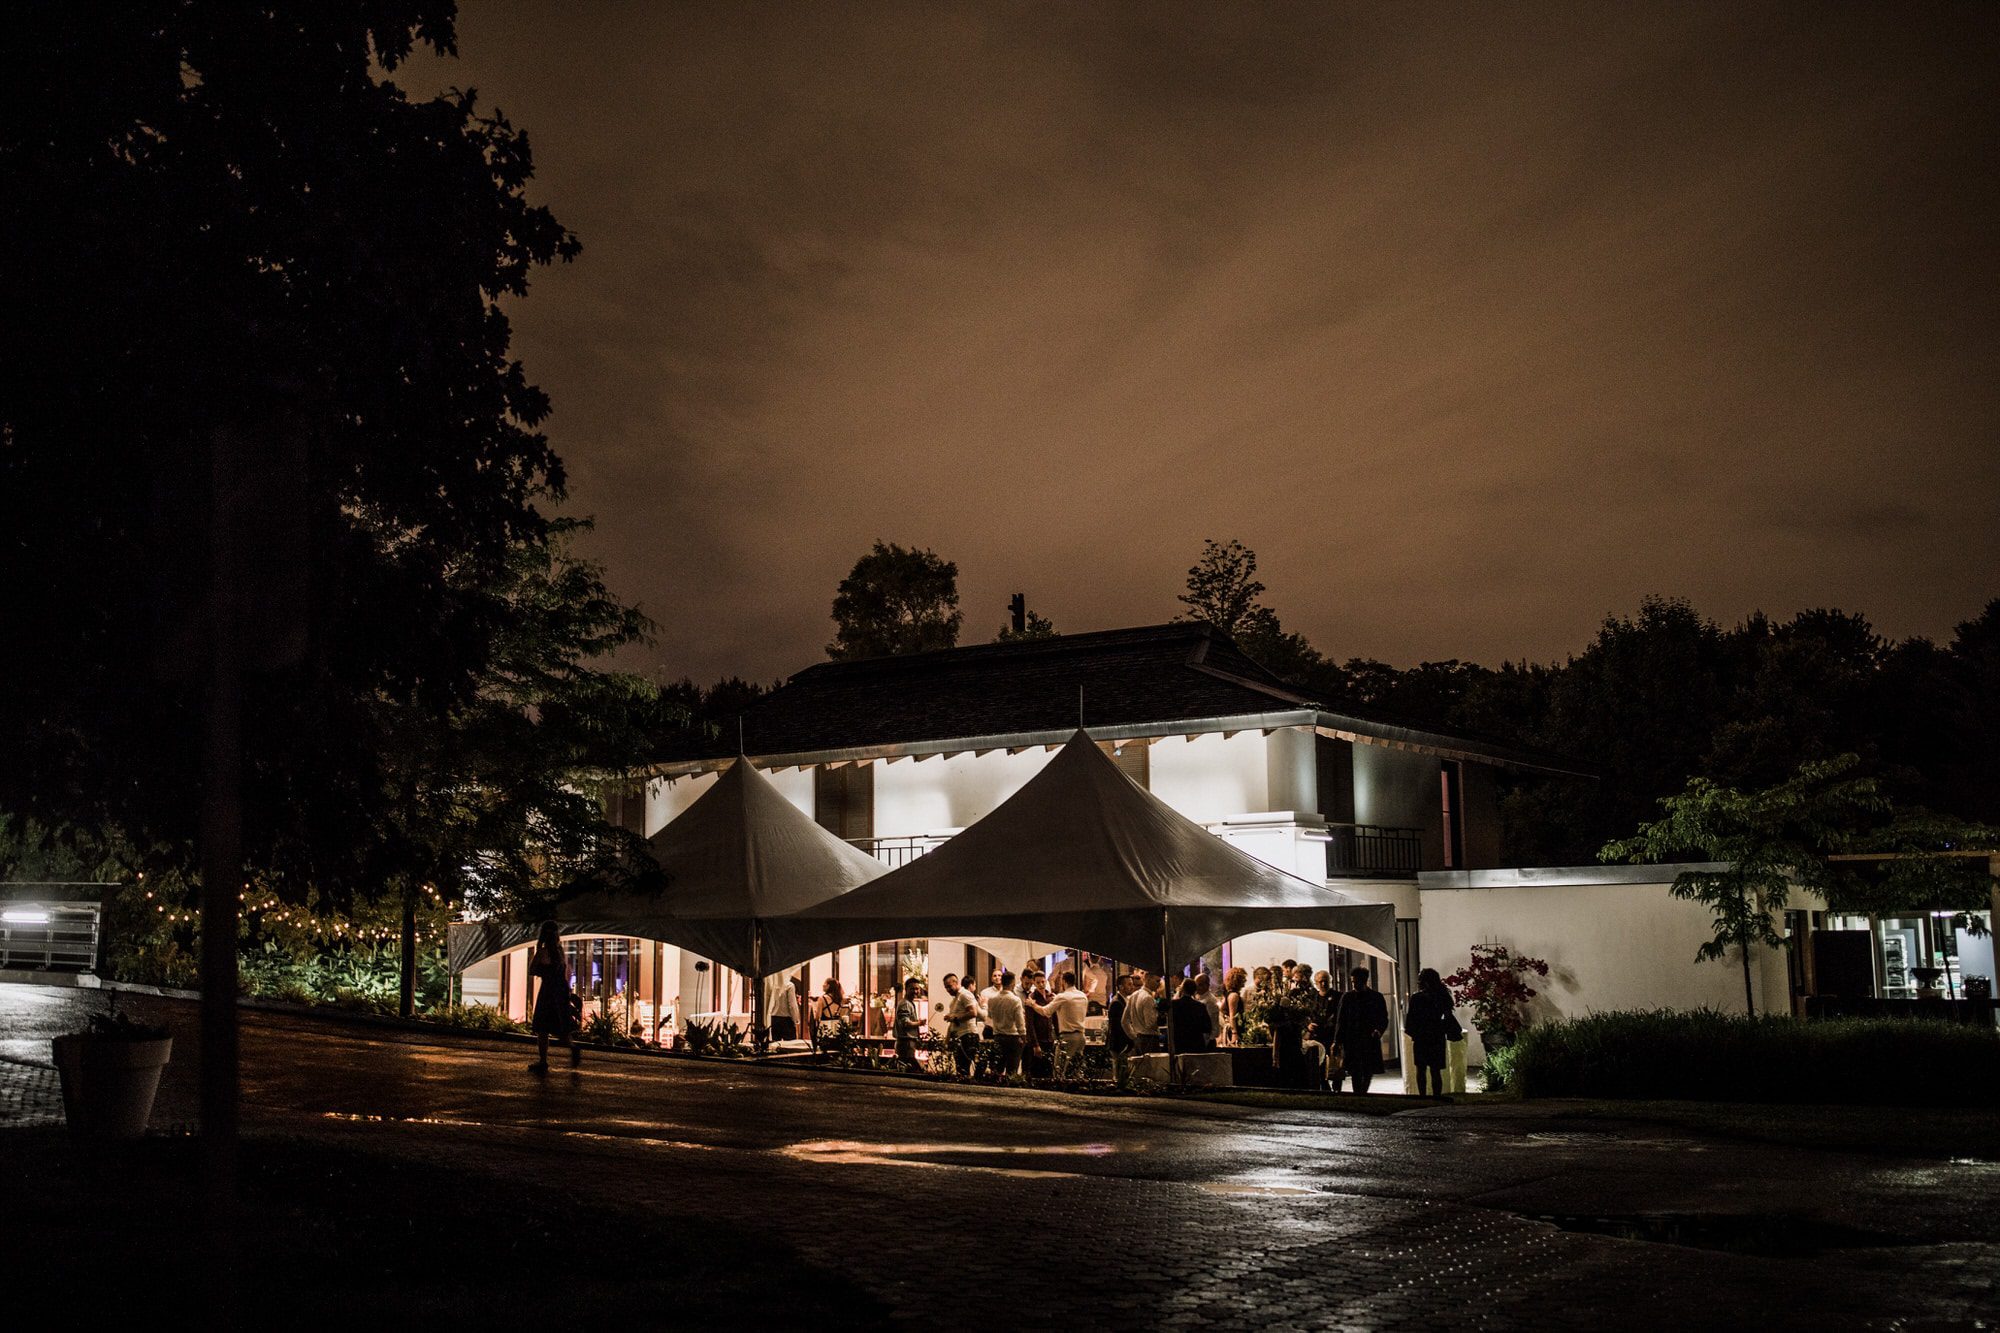 Pavilion Jamaique Wedding at Parc Jean Drapeau - Tent at night - Brent Calis Wedding Photographer